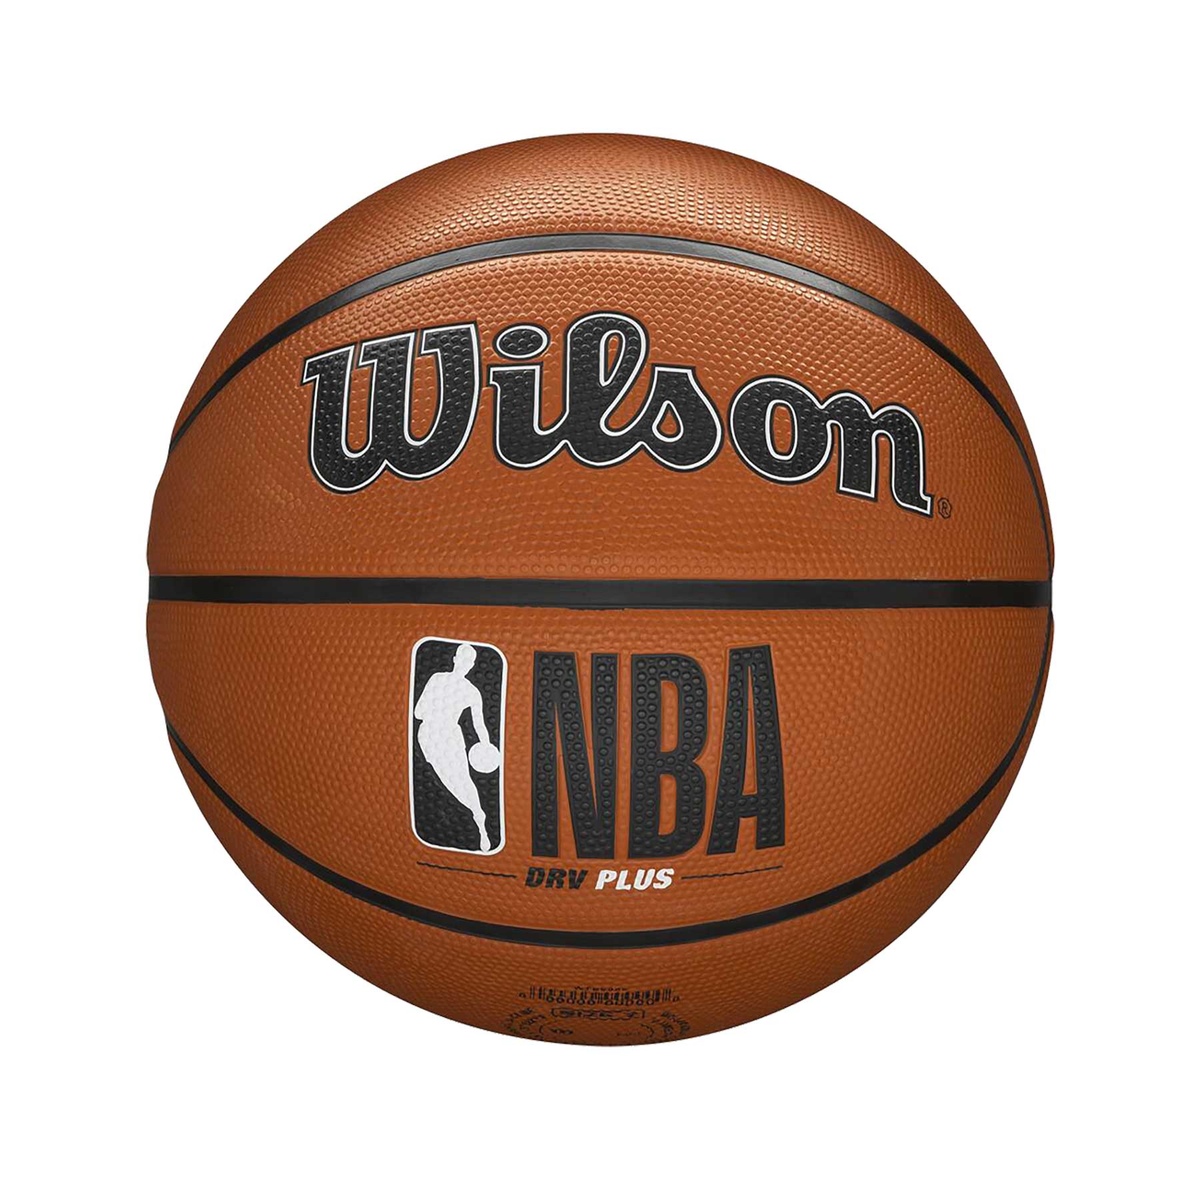 PALLONE NBA DRV PLUS 5